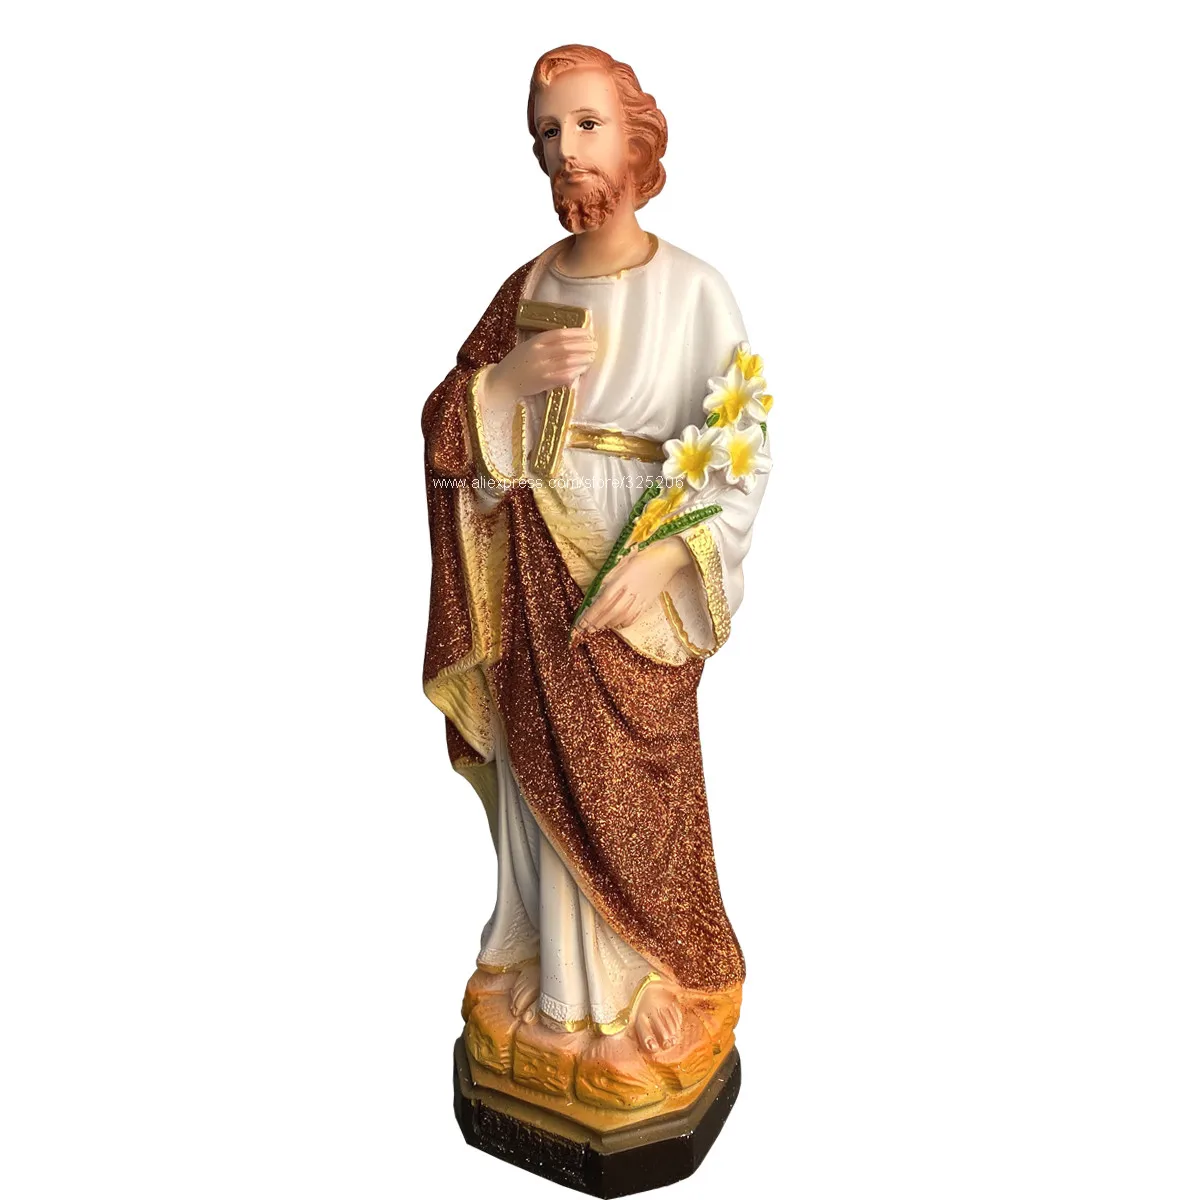 

Статуя Святого Иосифа, статуя статуи, скульптура, полимерная католическая настольная статуя, декоративная статуэтка, 30 см, 11,8 дюйма, Новинка